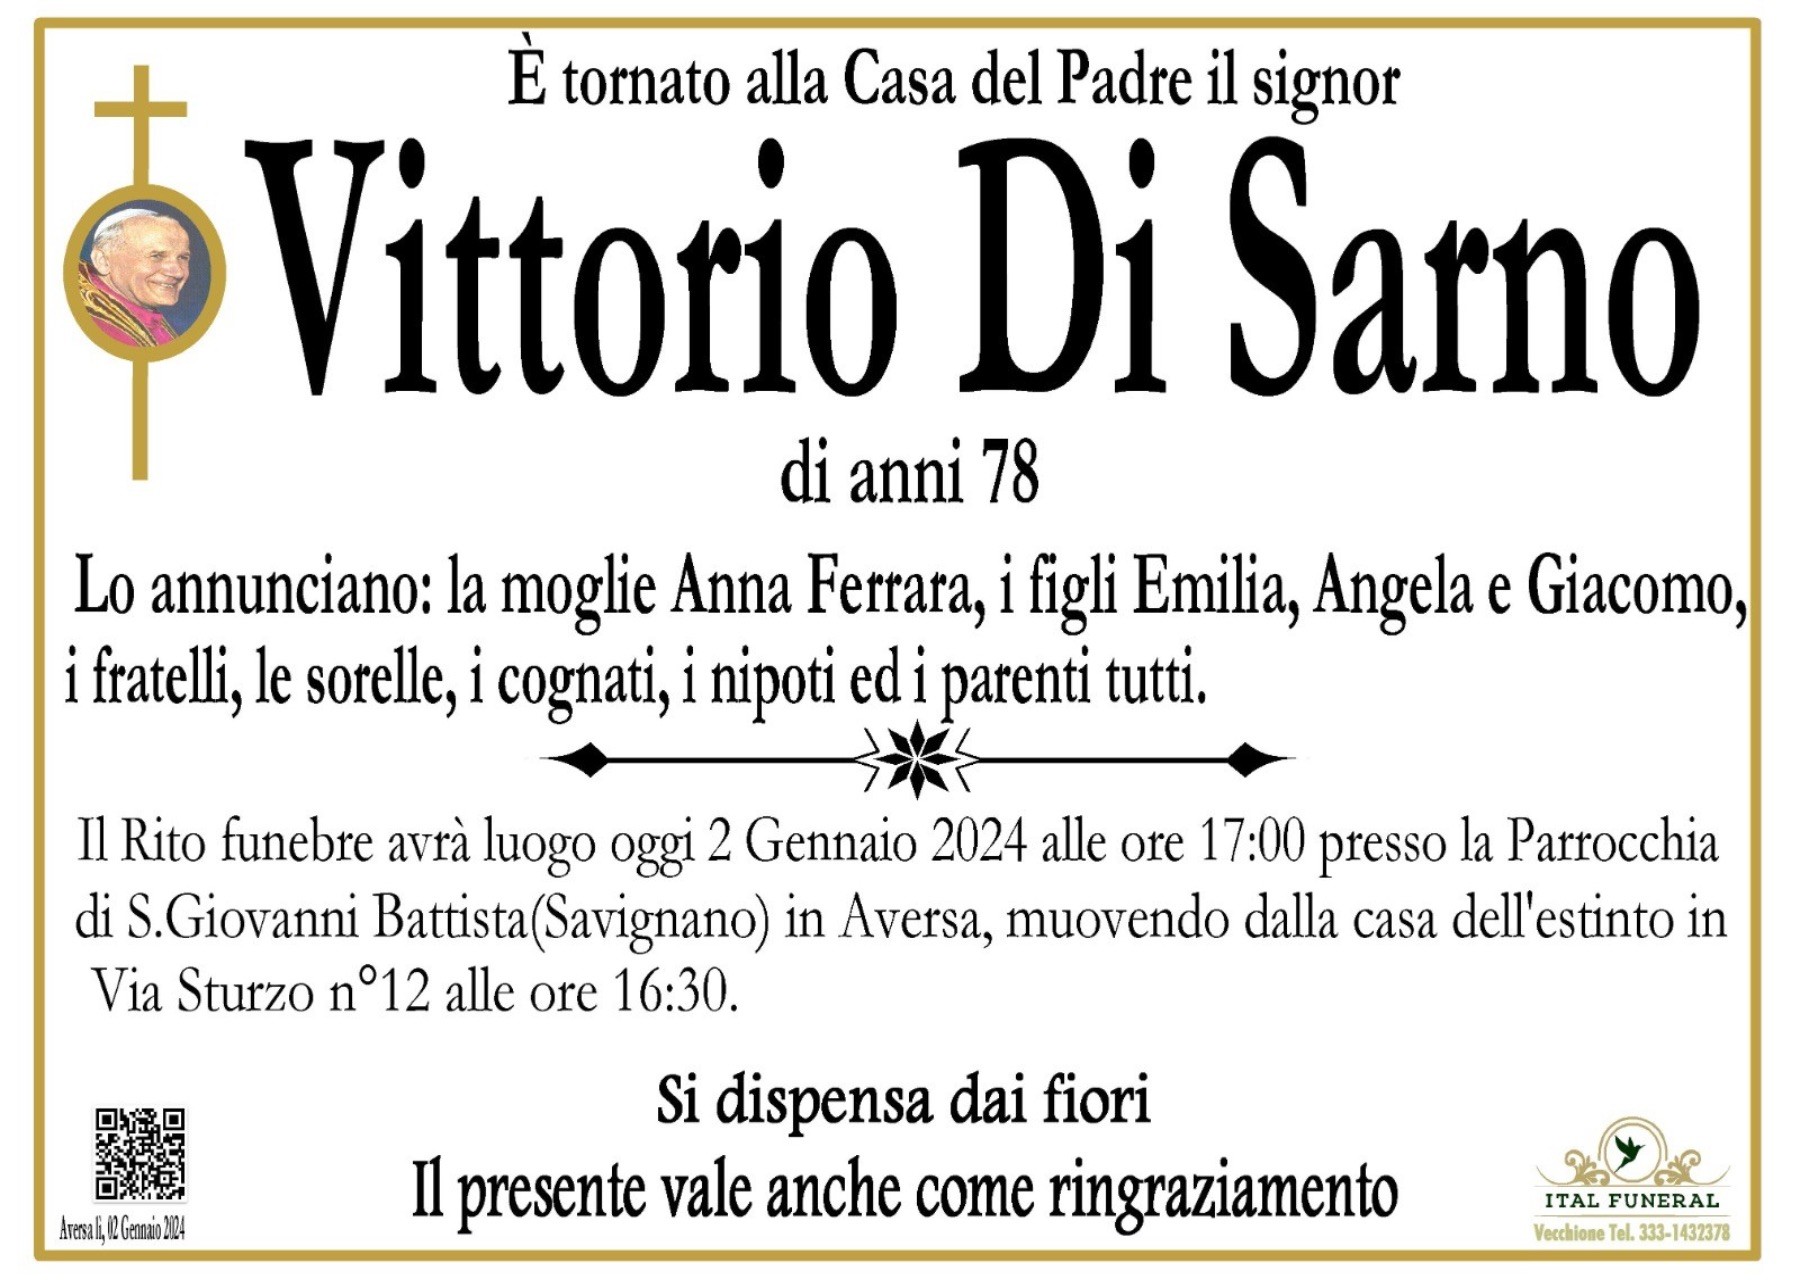 Vittorio Di Sarno